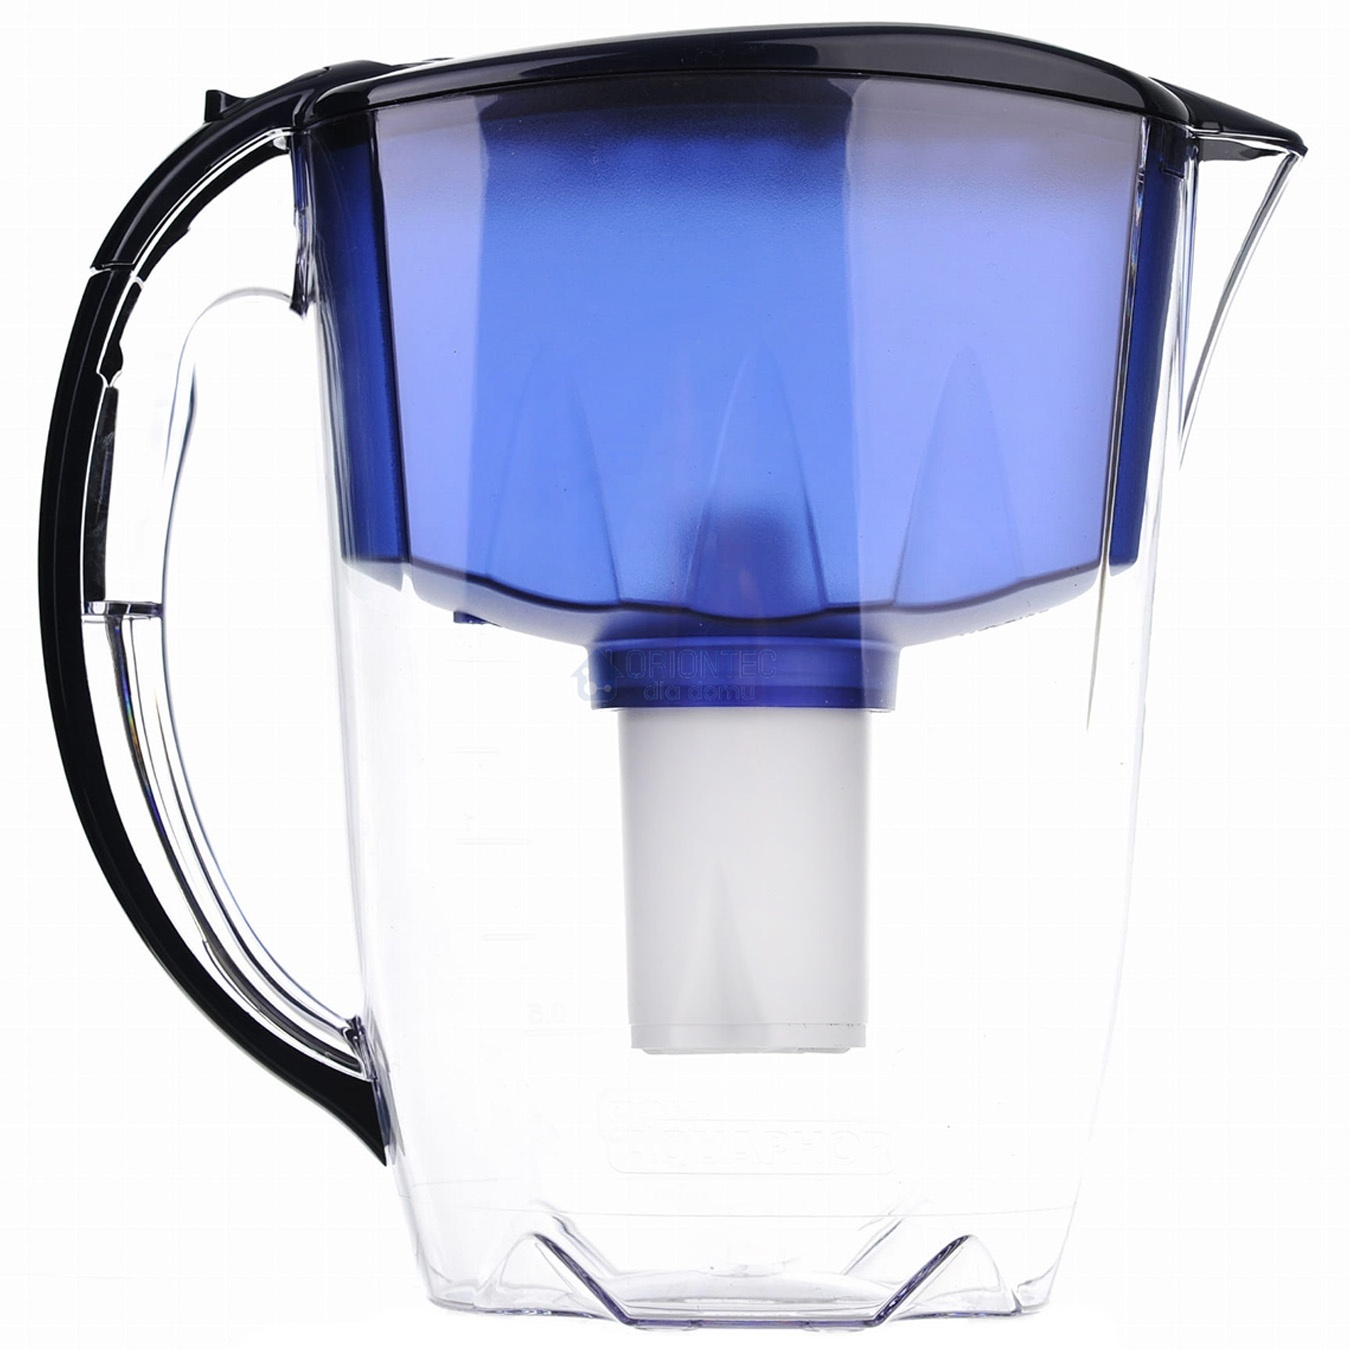 Water purifier jug Aquafor Ideal cobalt blue